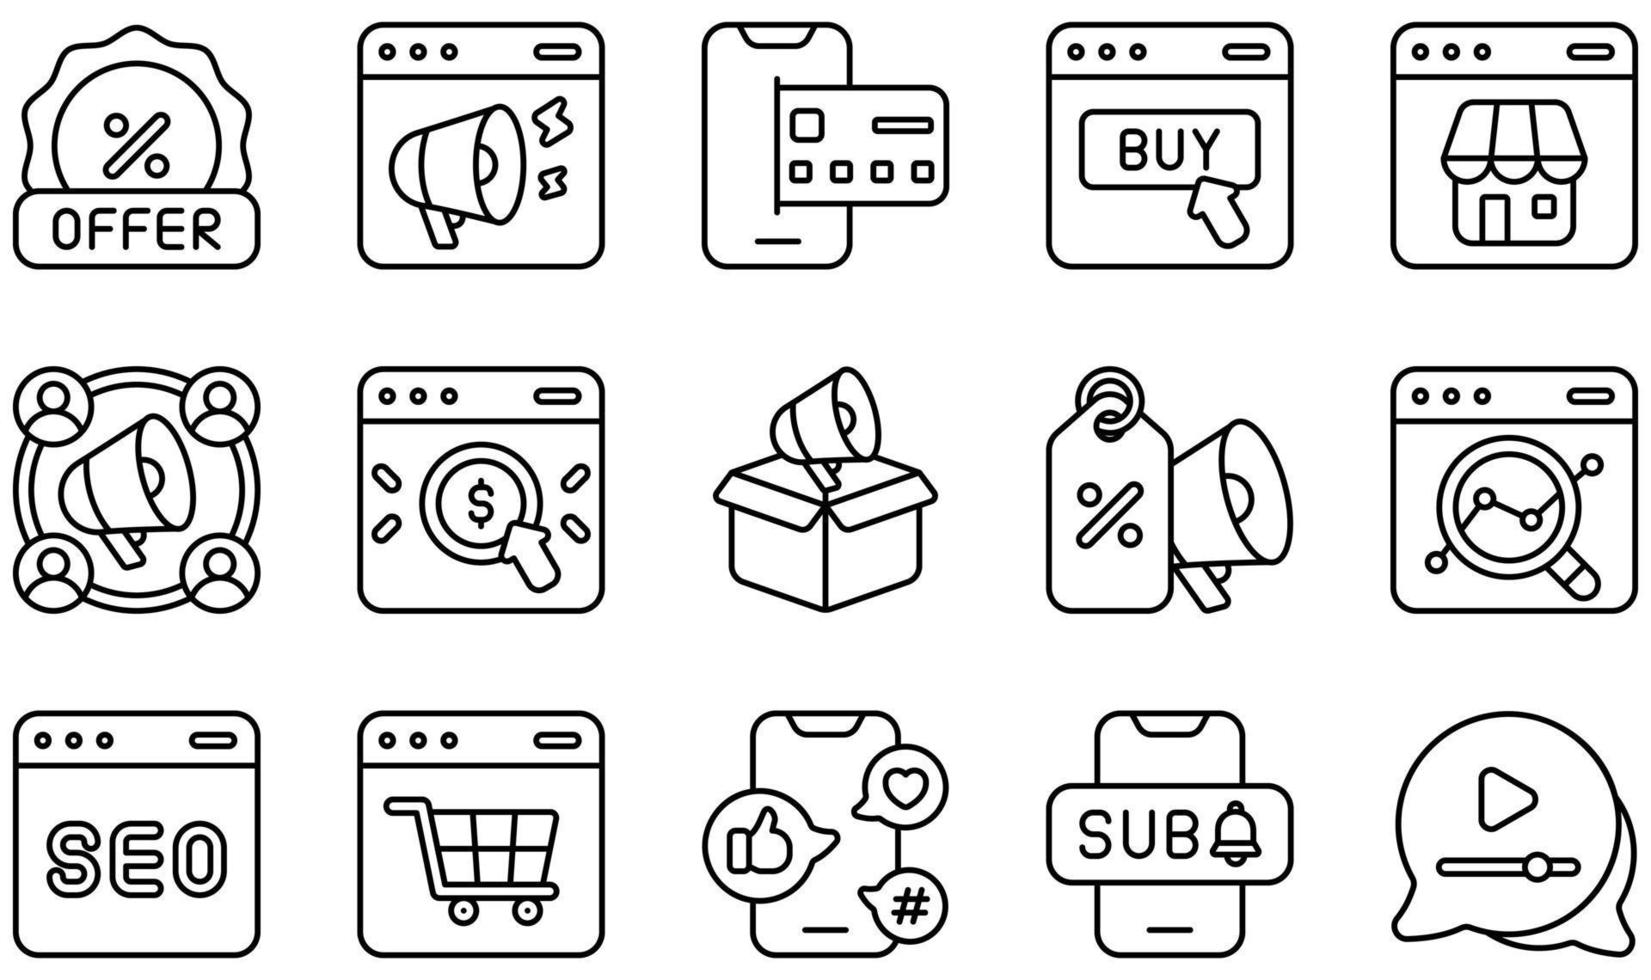 conjunto de iconos vectoriales relacionados con el marketing online. contiene íconos como marketing en línea, pago en línea, compras en línea, tienda en línea, marketing saliente, SEO y más. vector